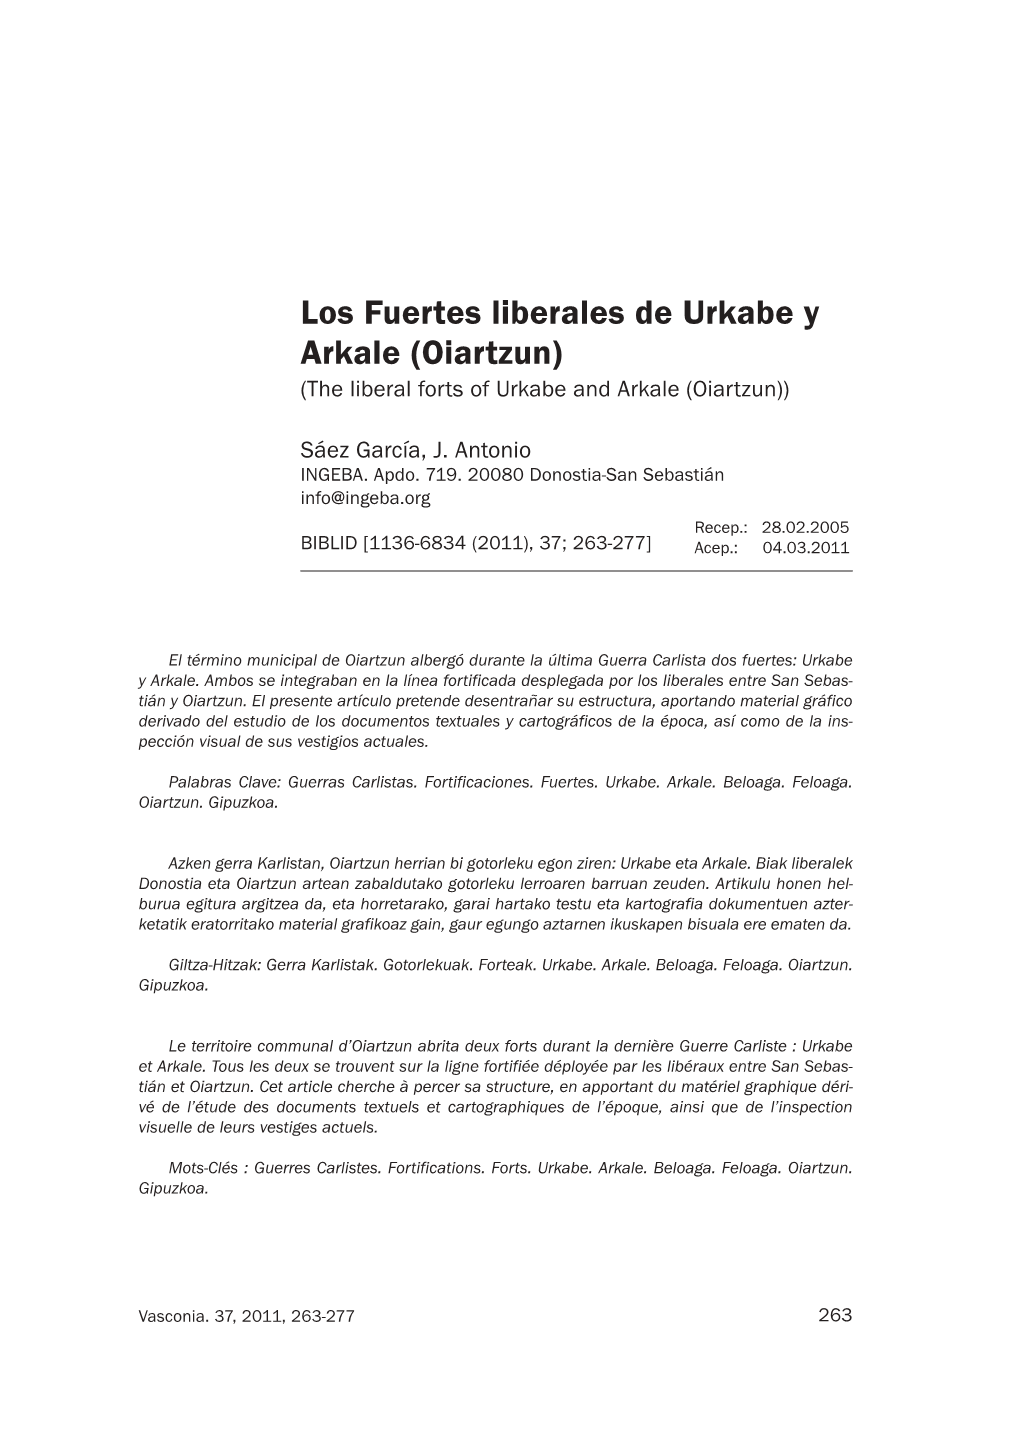 Los Fuertes Liberales De Urkabe Y Arkale (Oiartzun) (The Liberal Forts of Urkabe and Arkale (Oiartzun))